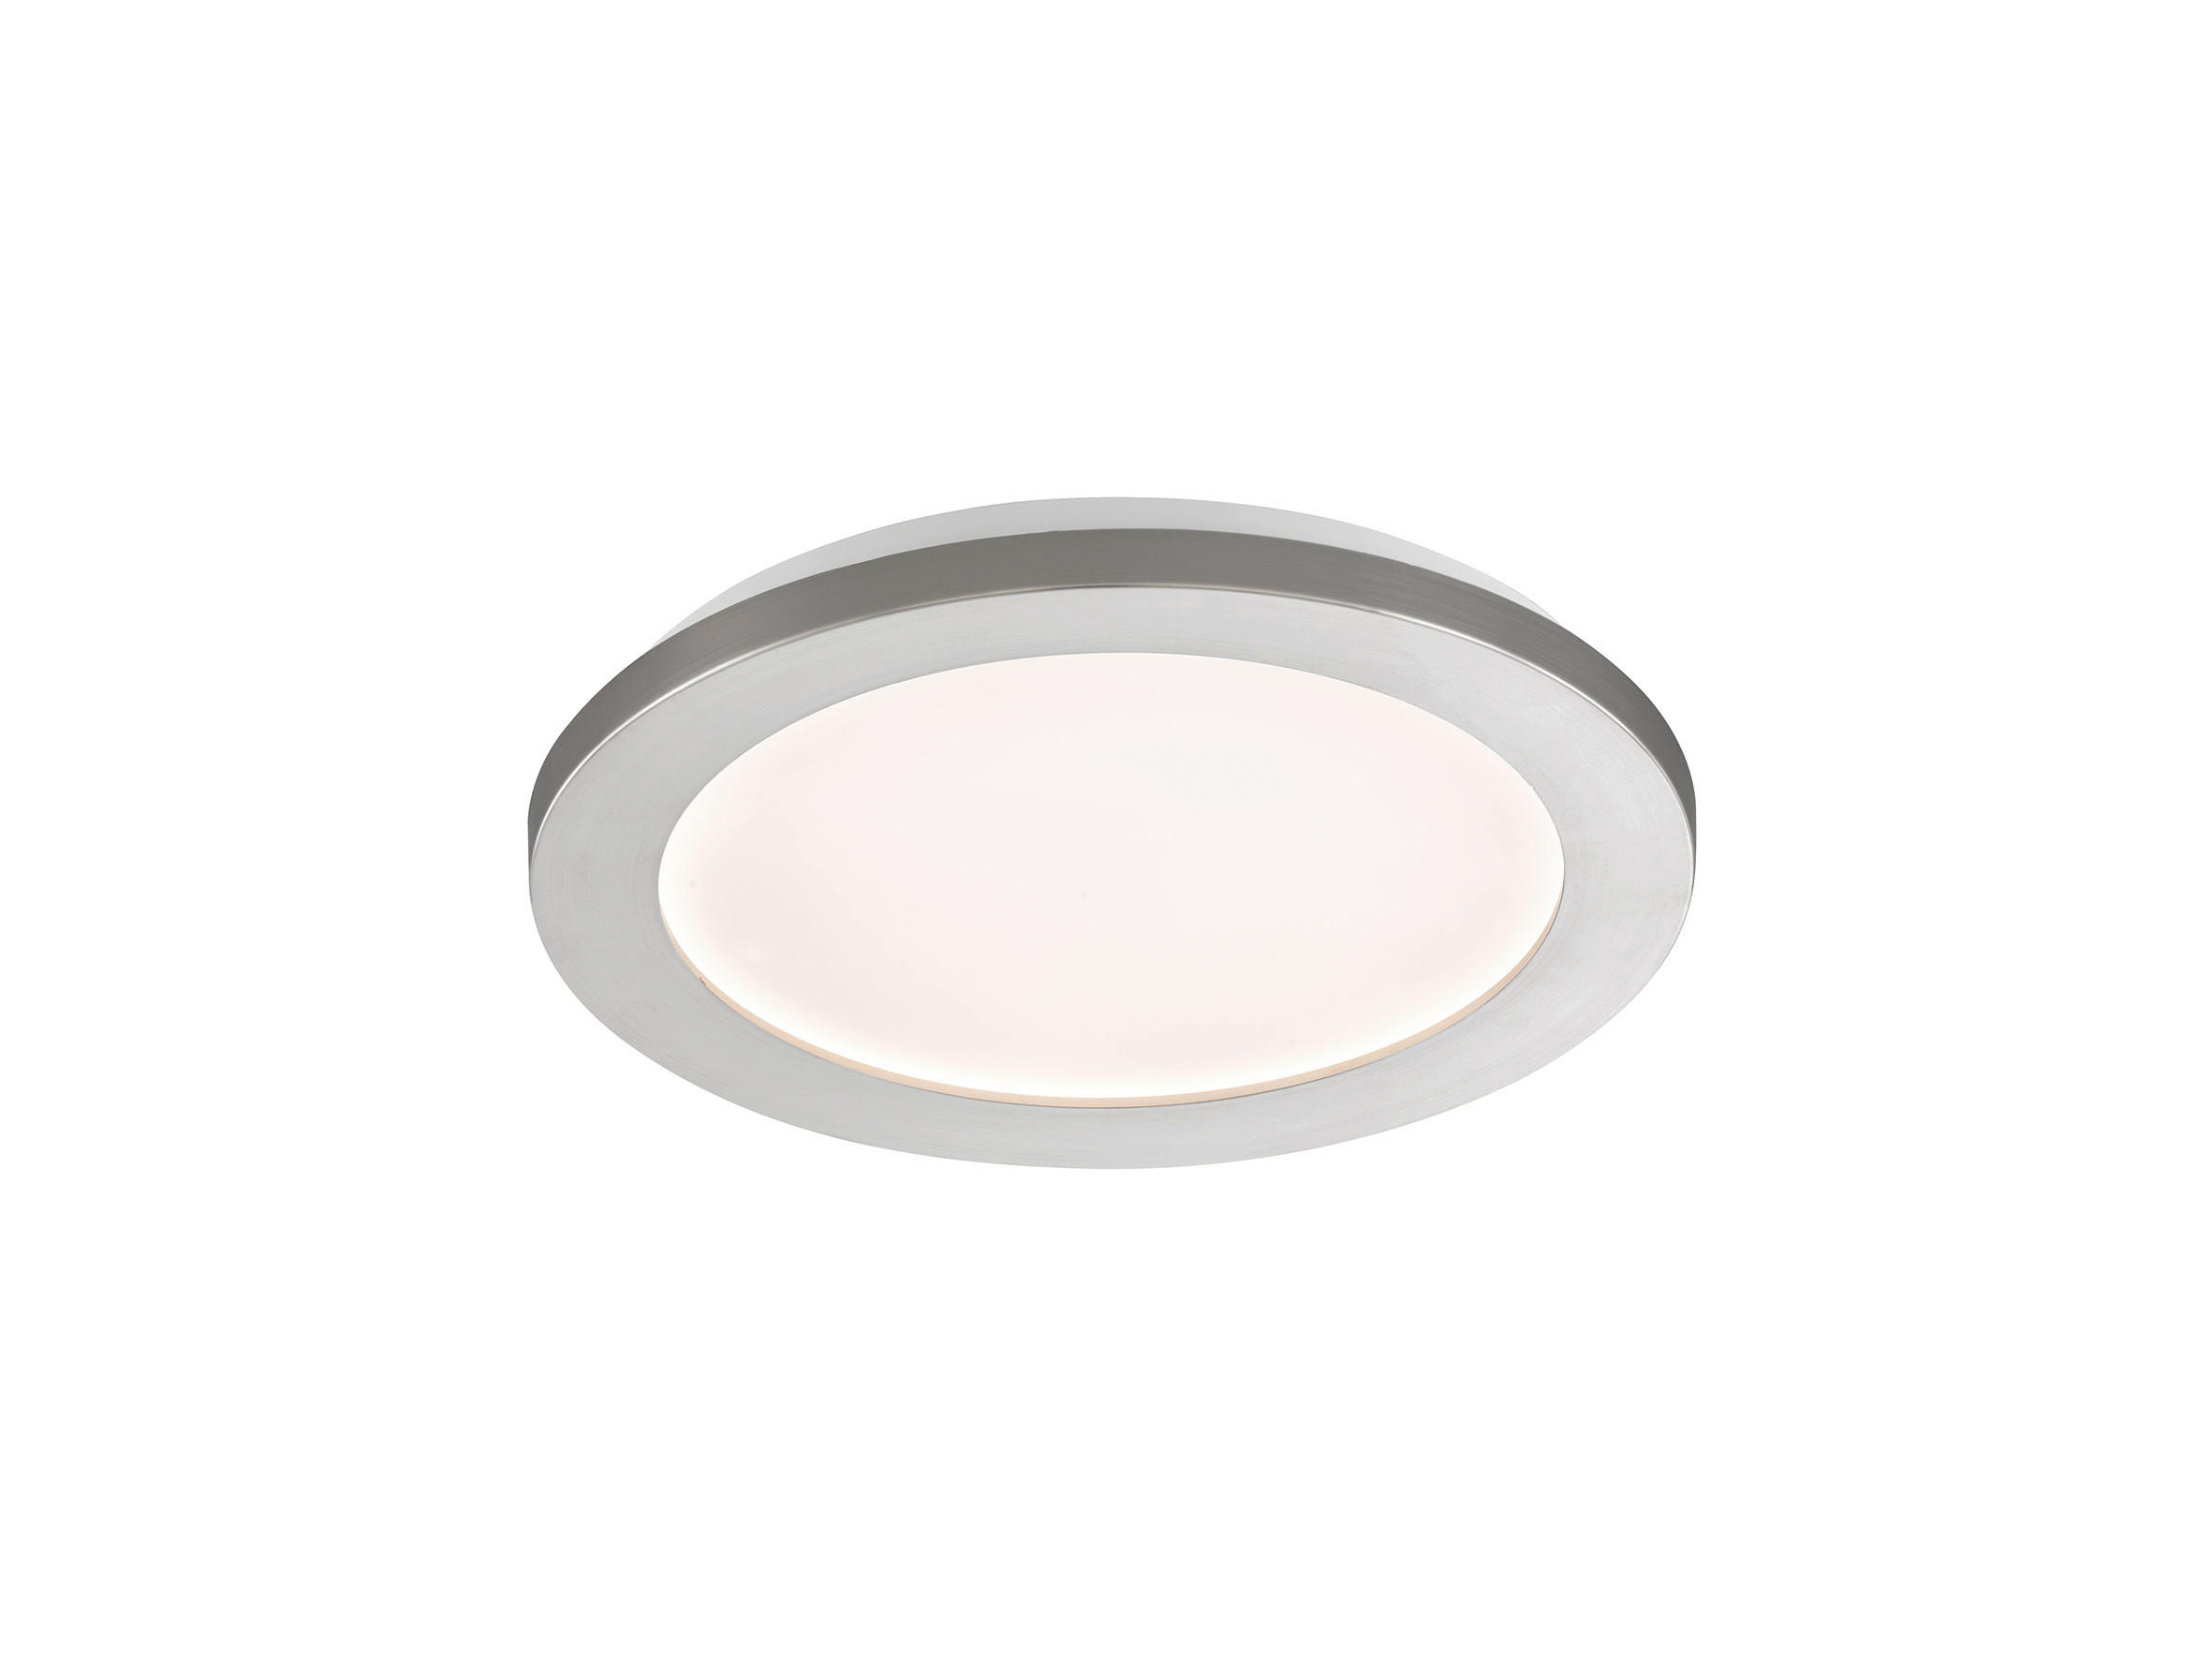 LED-DECKENLEUCHTE Gotland 22 cm  - Weiß/Nickelfarben, Basics, Glas/Kunststoff (22cm) - Fischer & Honsel